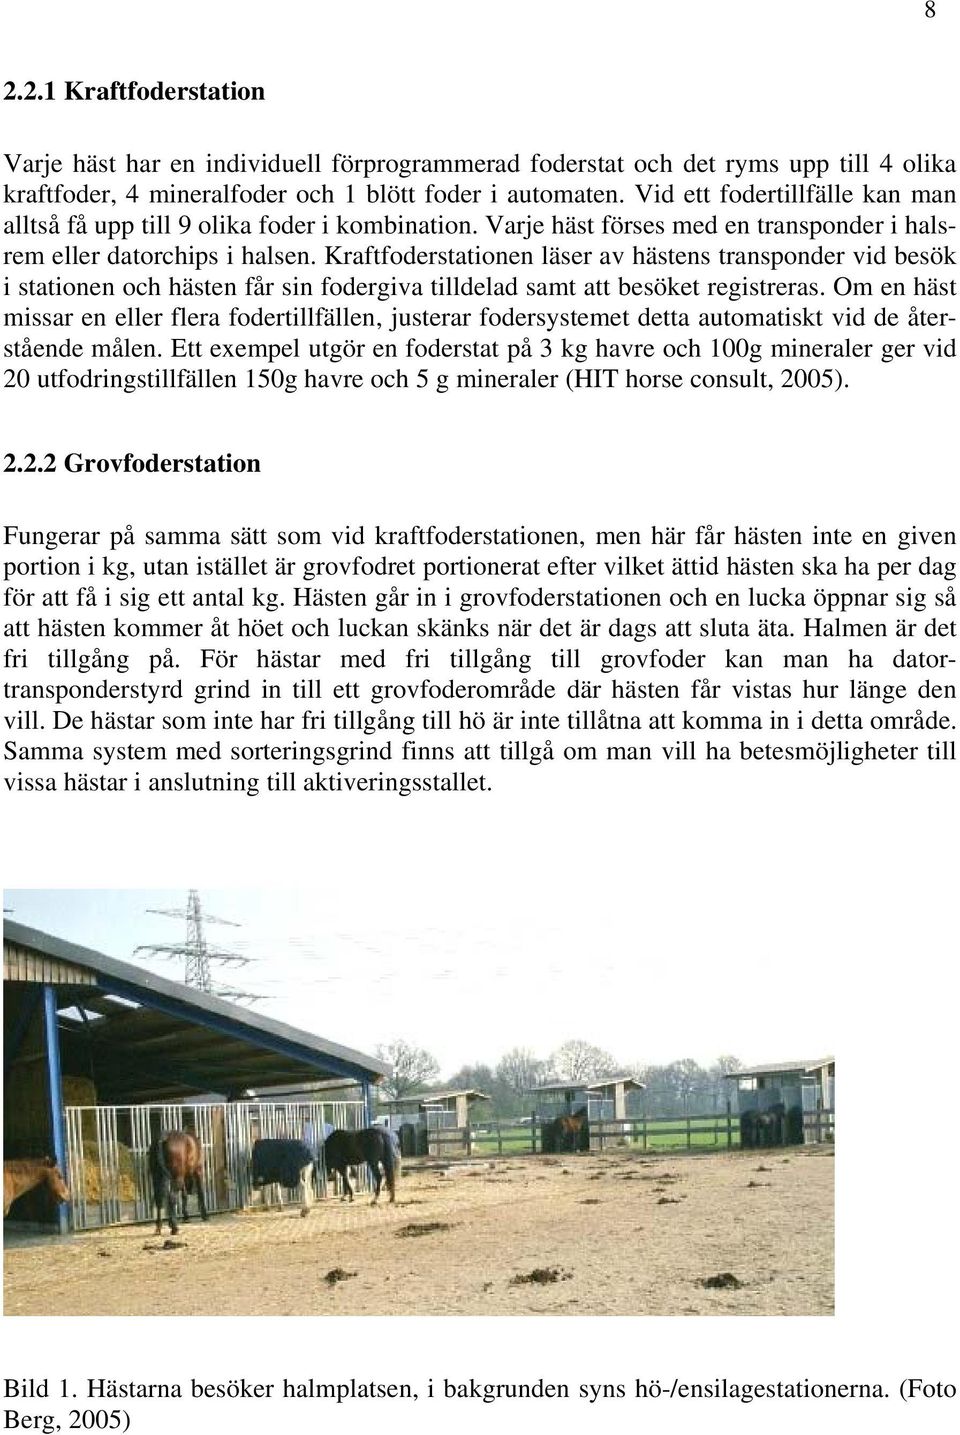 Kraftfoderstationen läser av hästens transponder vid besök i stationen och hästen får sin fodergiva tilldelad samt att besöket registreras.